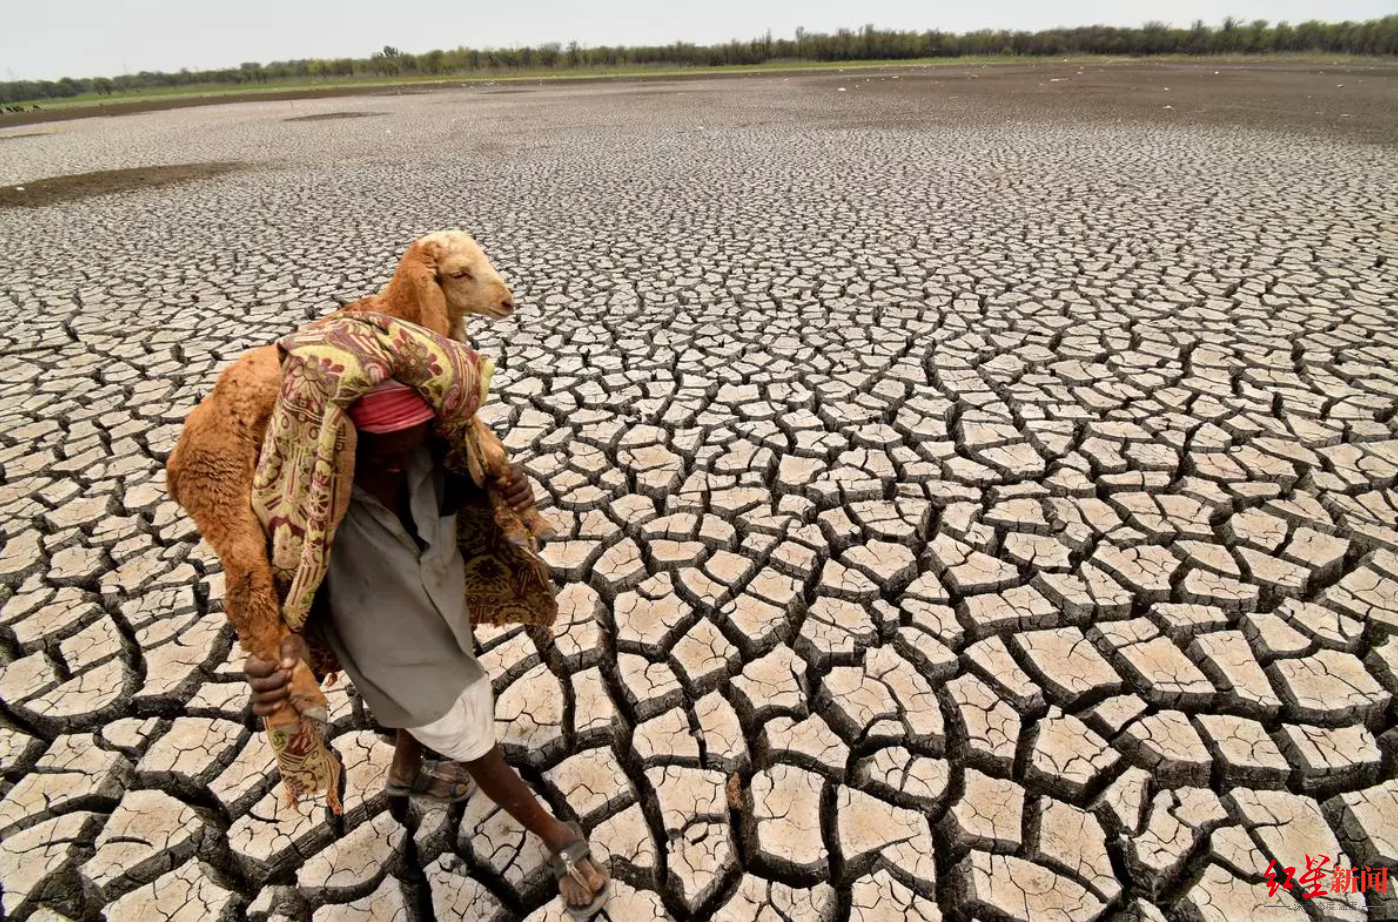 ↑气温升高在印度造成严重干旱问题